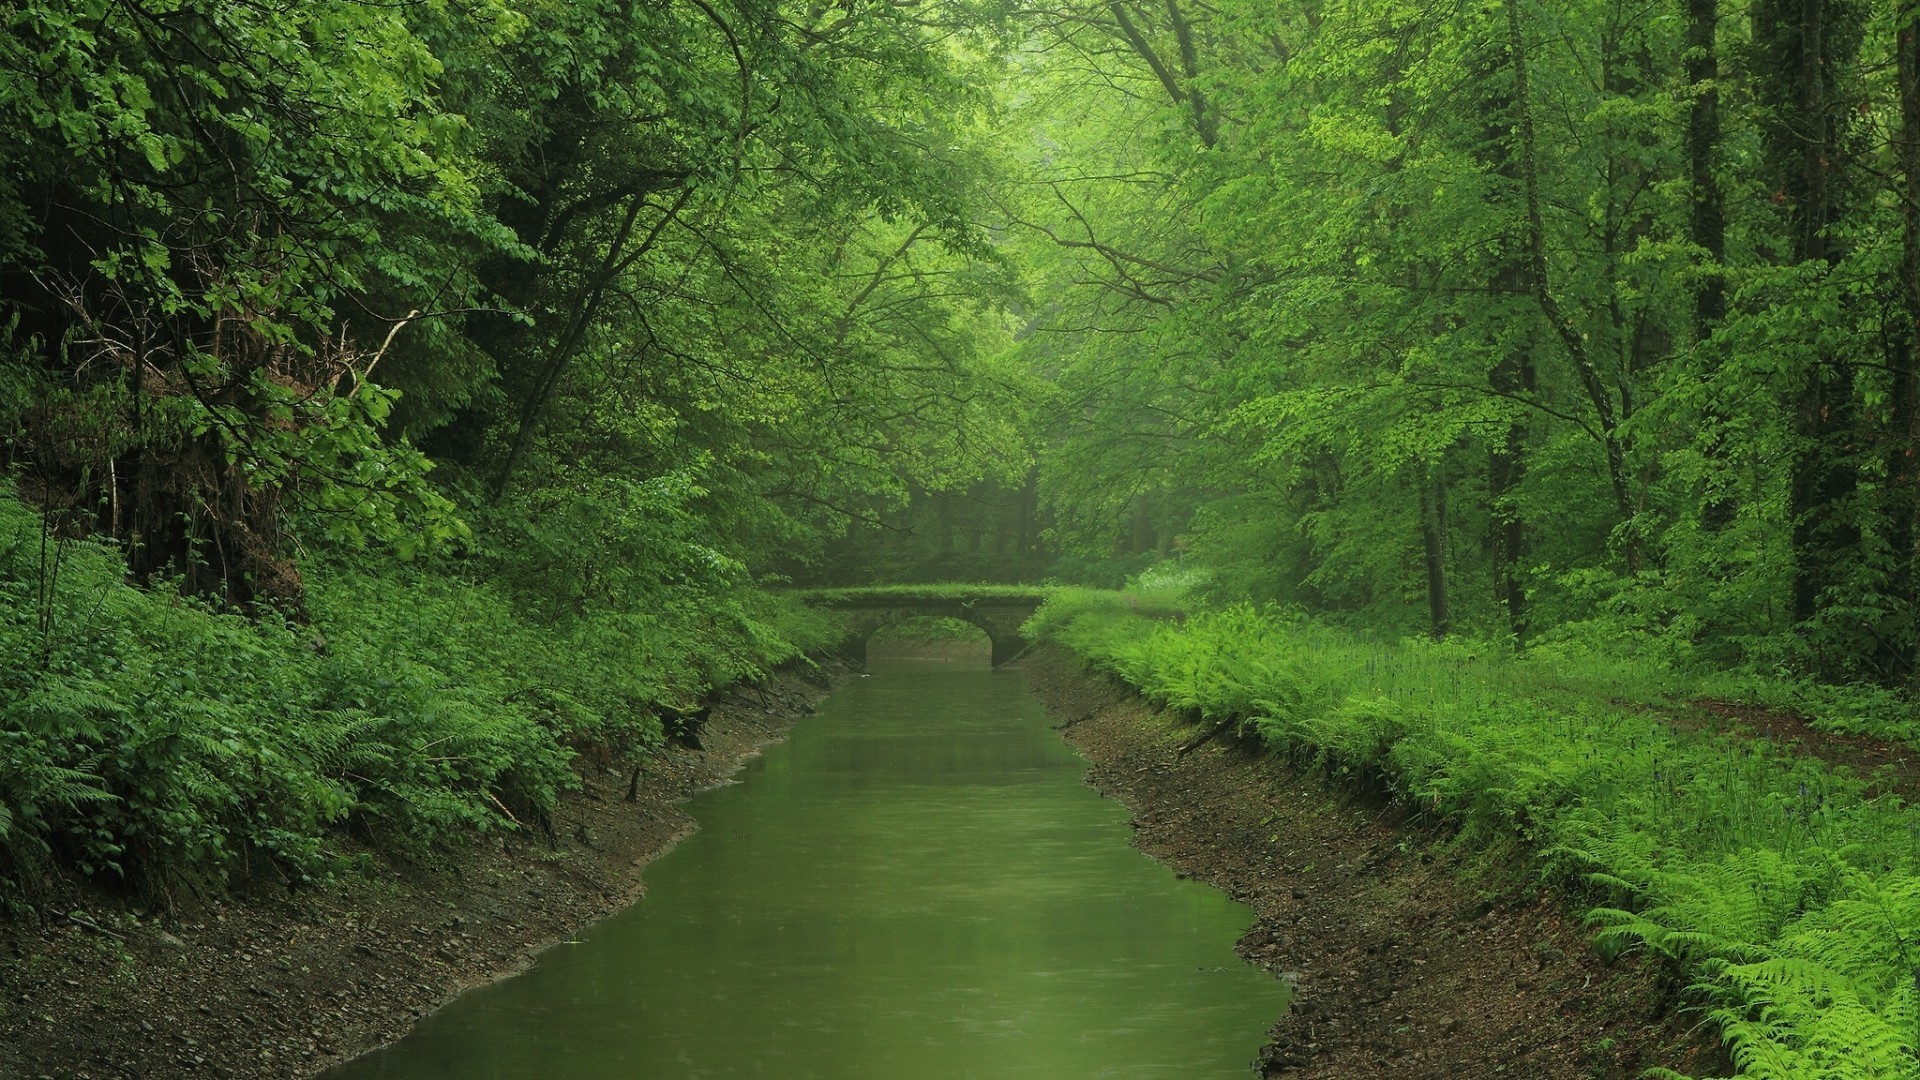 реки пруды и ручьи прудов и ручьев древесины пейзаж дерево природа лист на открытом воздухе пышные воды лето путешествия среды дневной свет парк живописный